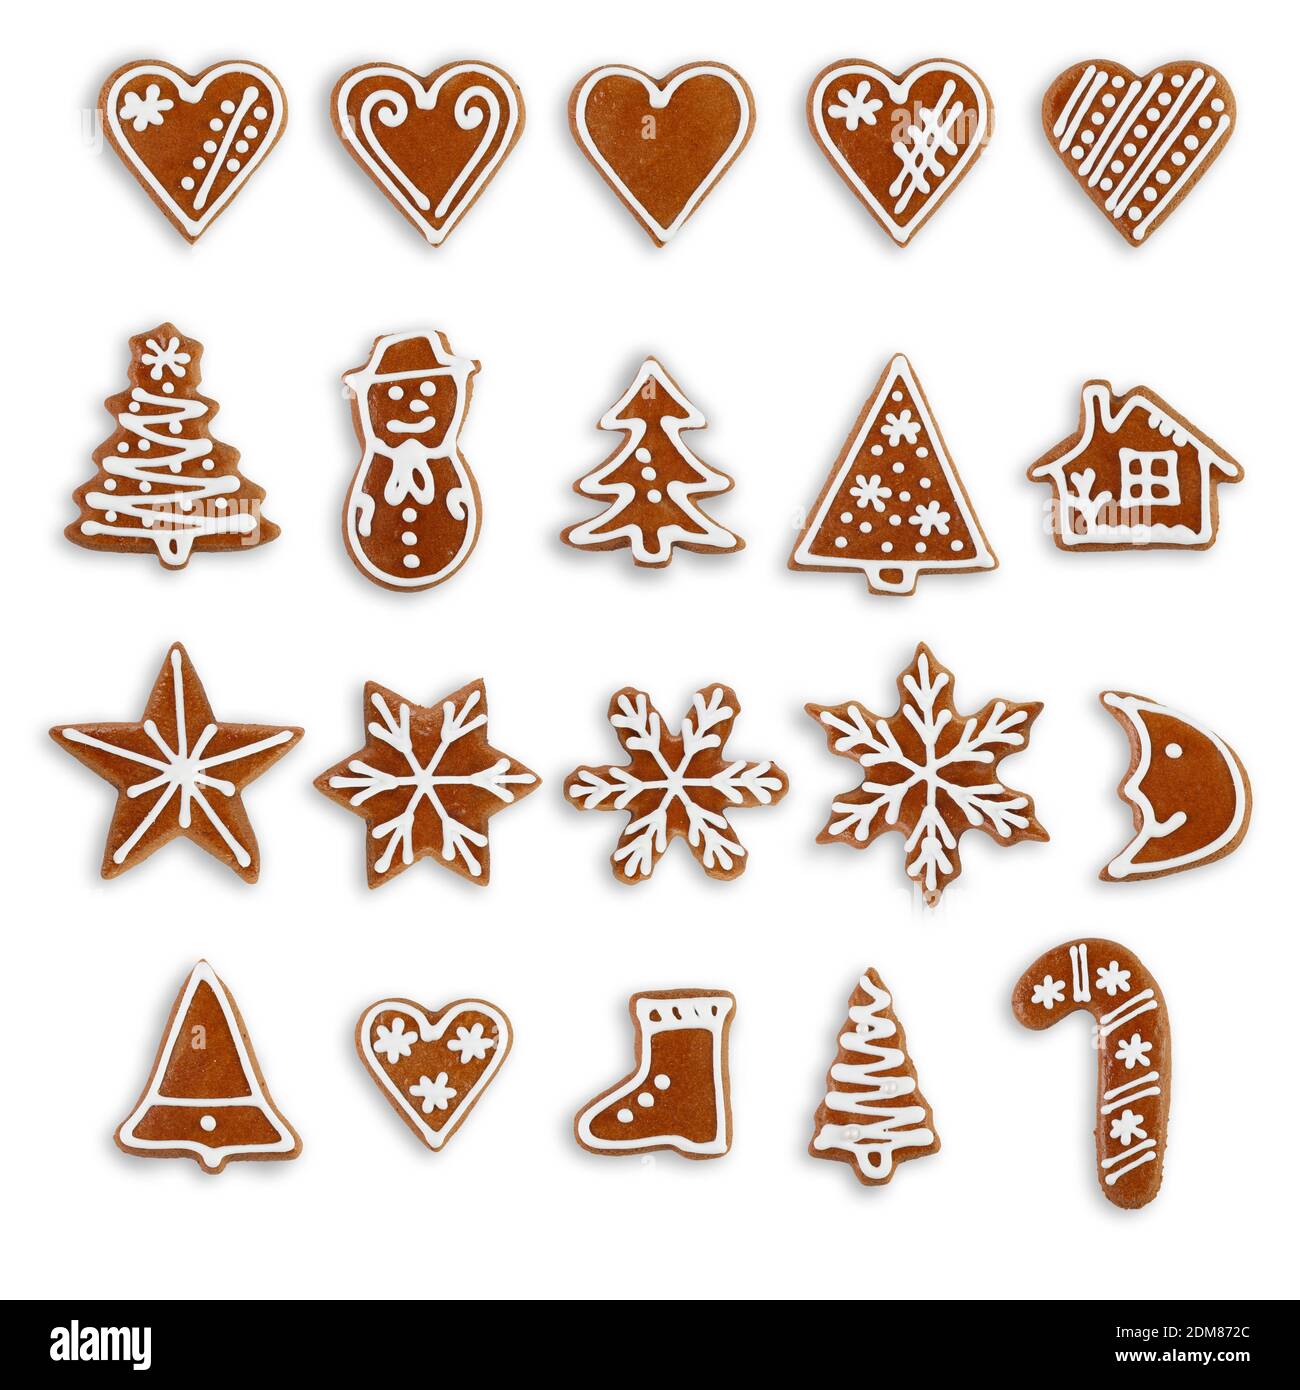 Pan de jengibre - galletas caseras de Navidad aisladas sobre fondo blanco Foto de stock